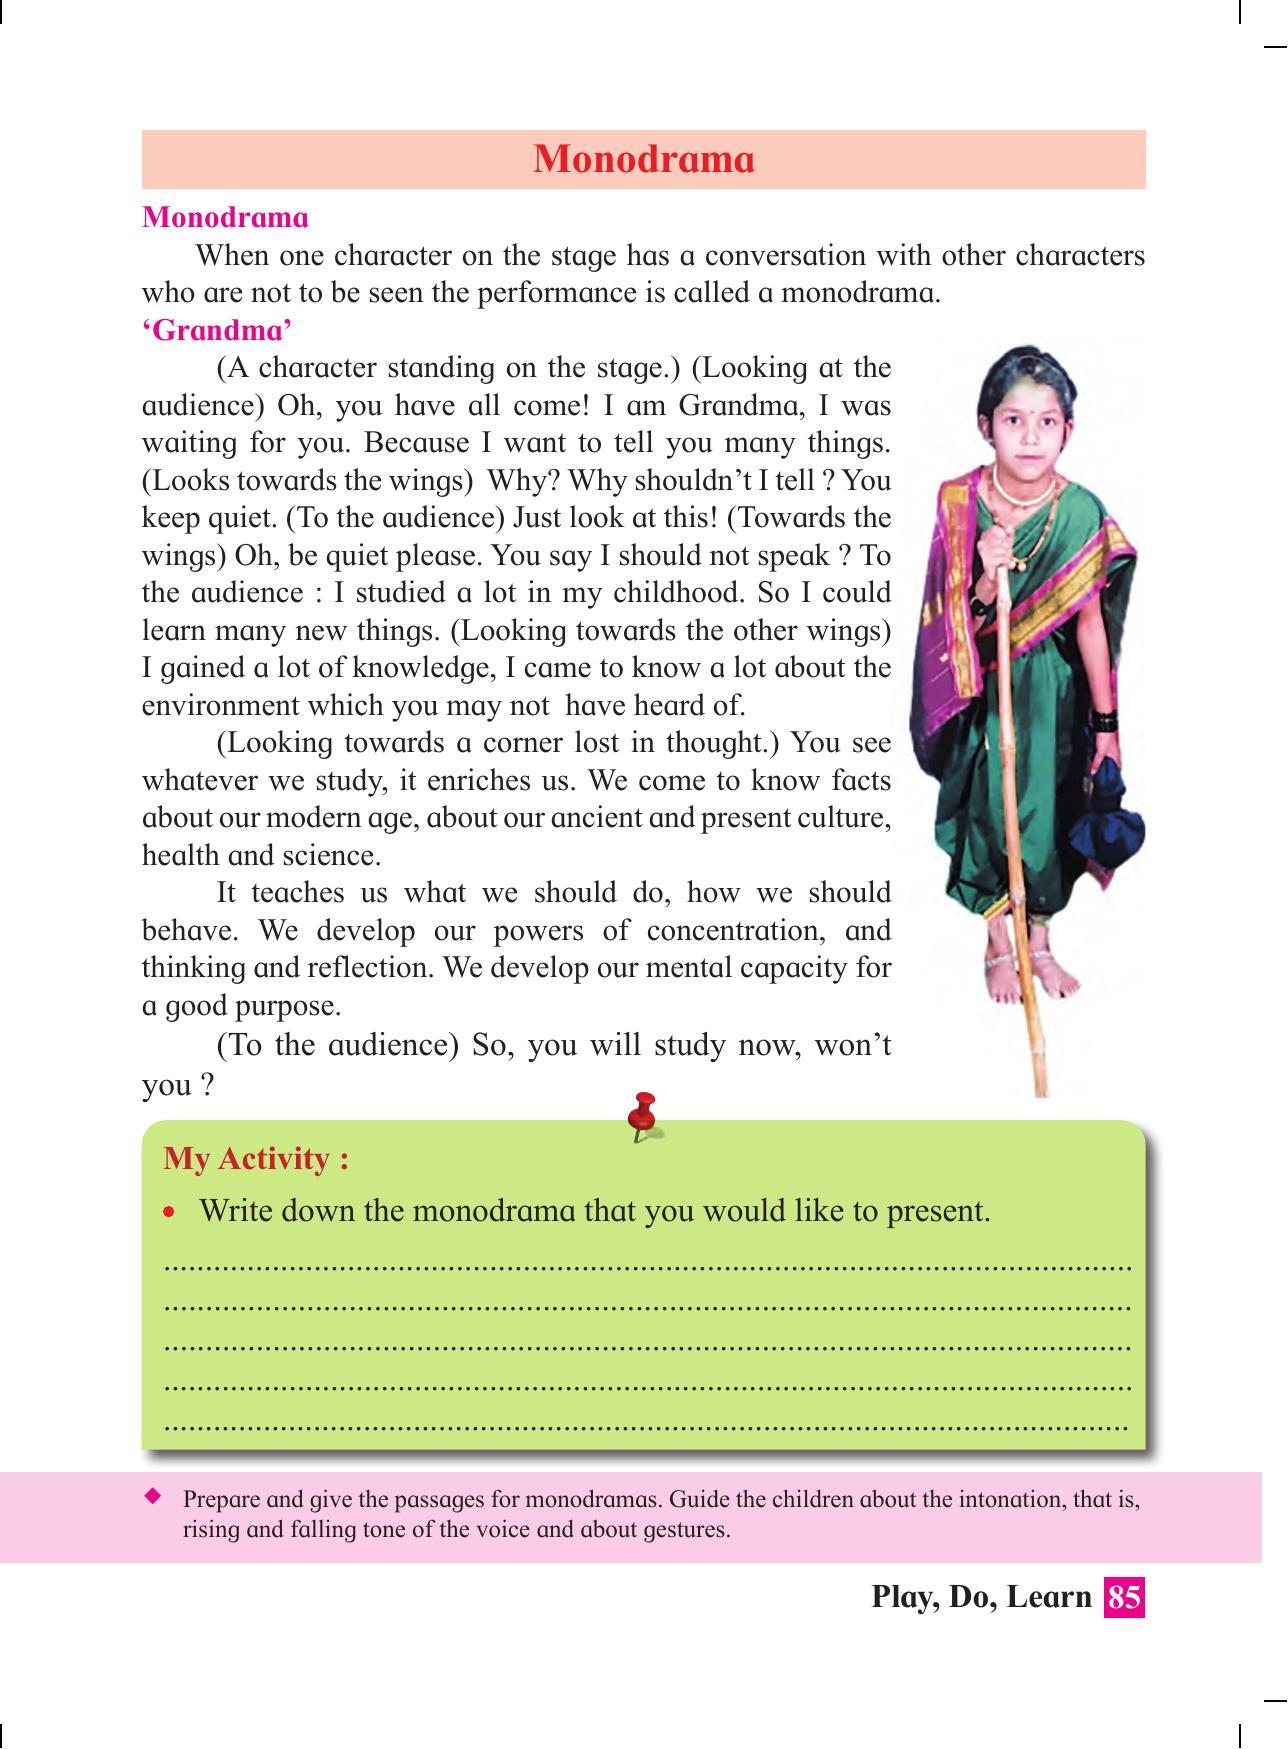 Maharashtra Board Class 4 Play Do Learn (English Medium) Textbook - Page 94